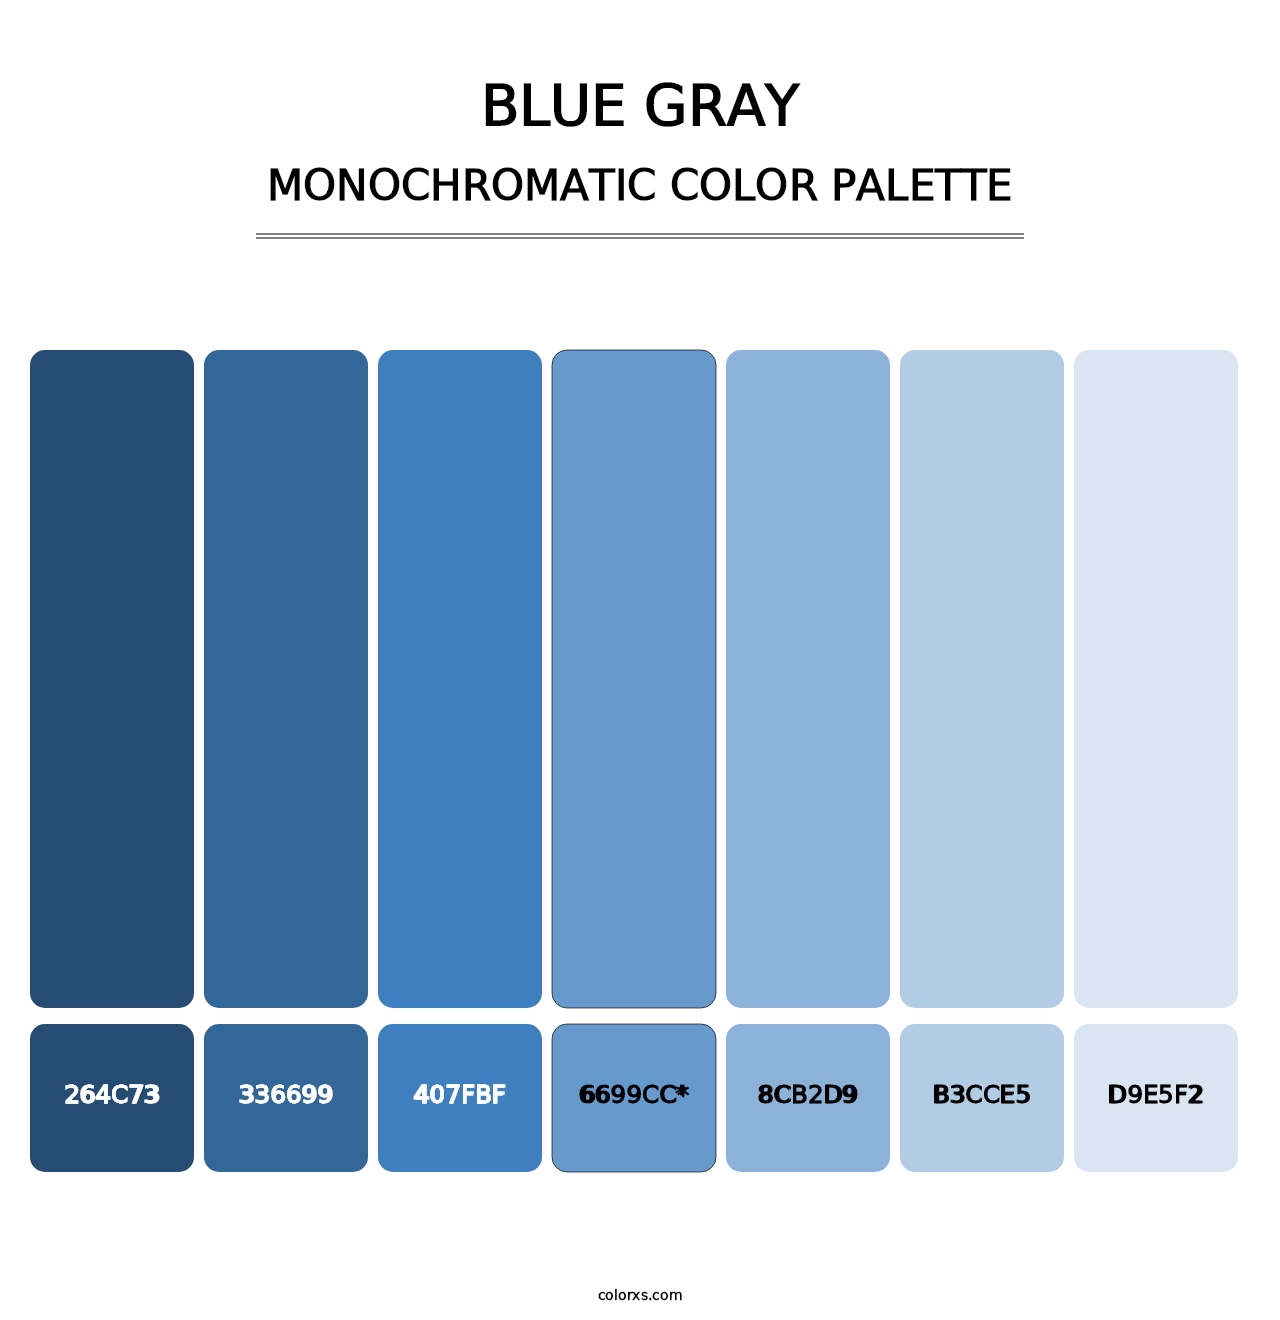 Blue Gray - Monochromatic Color Palette